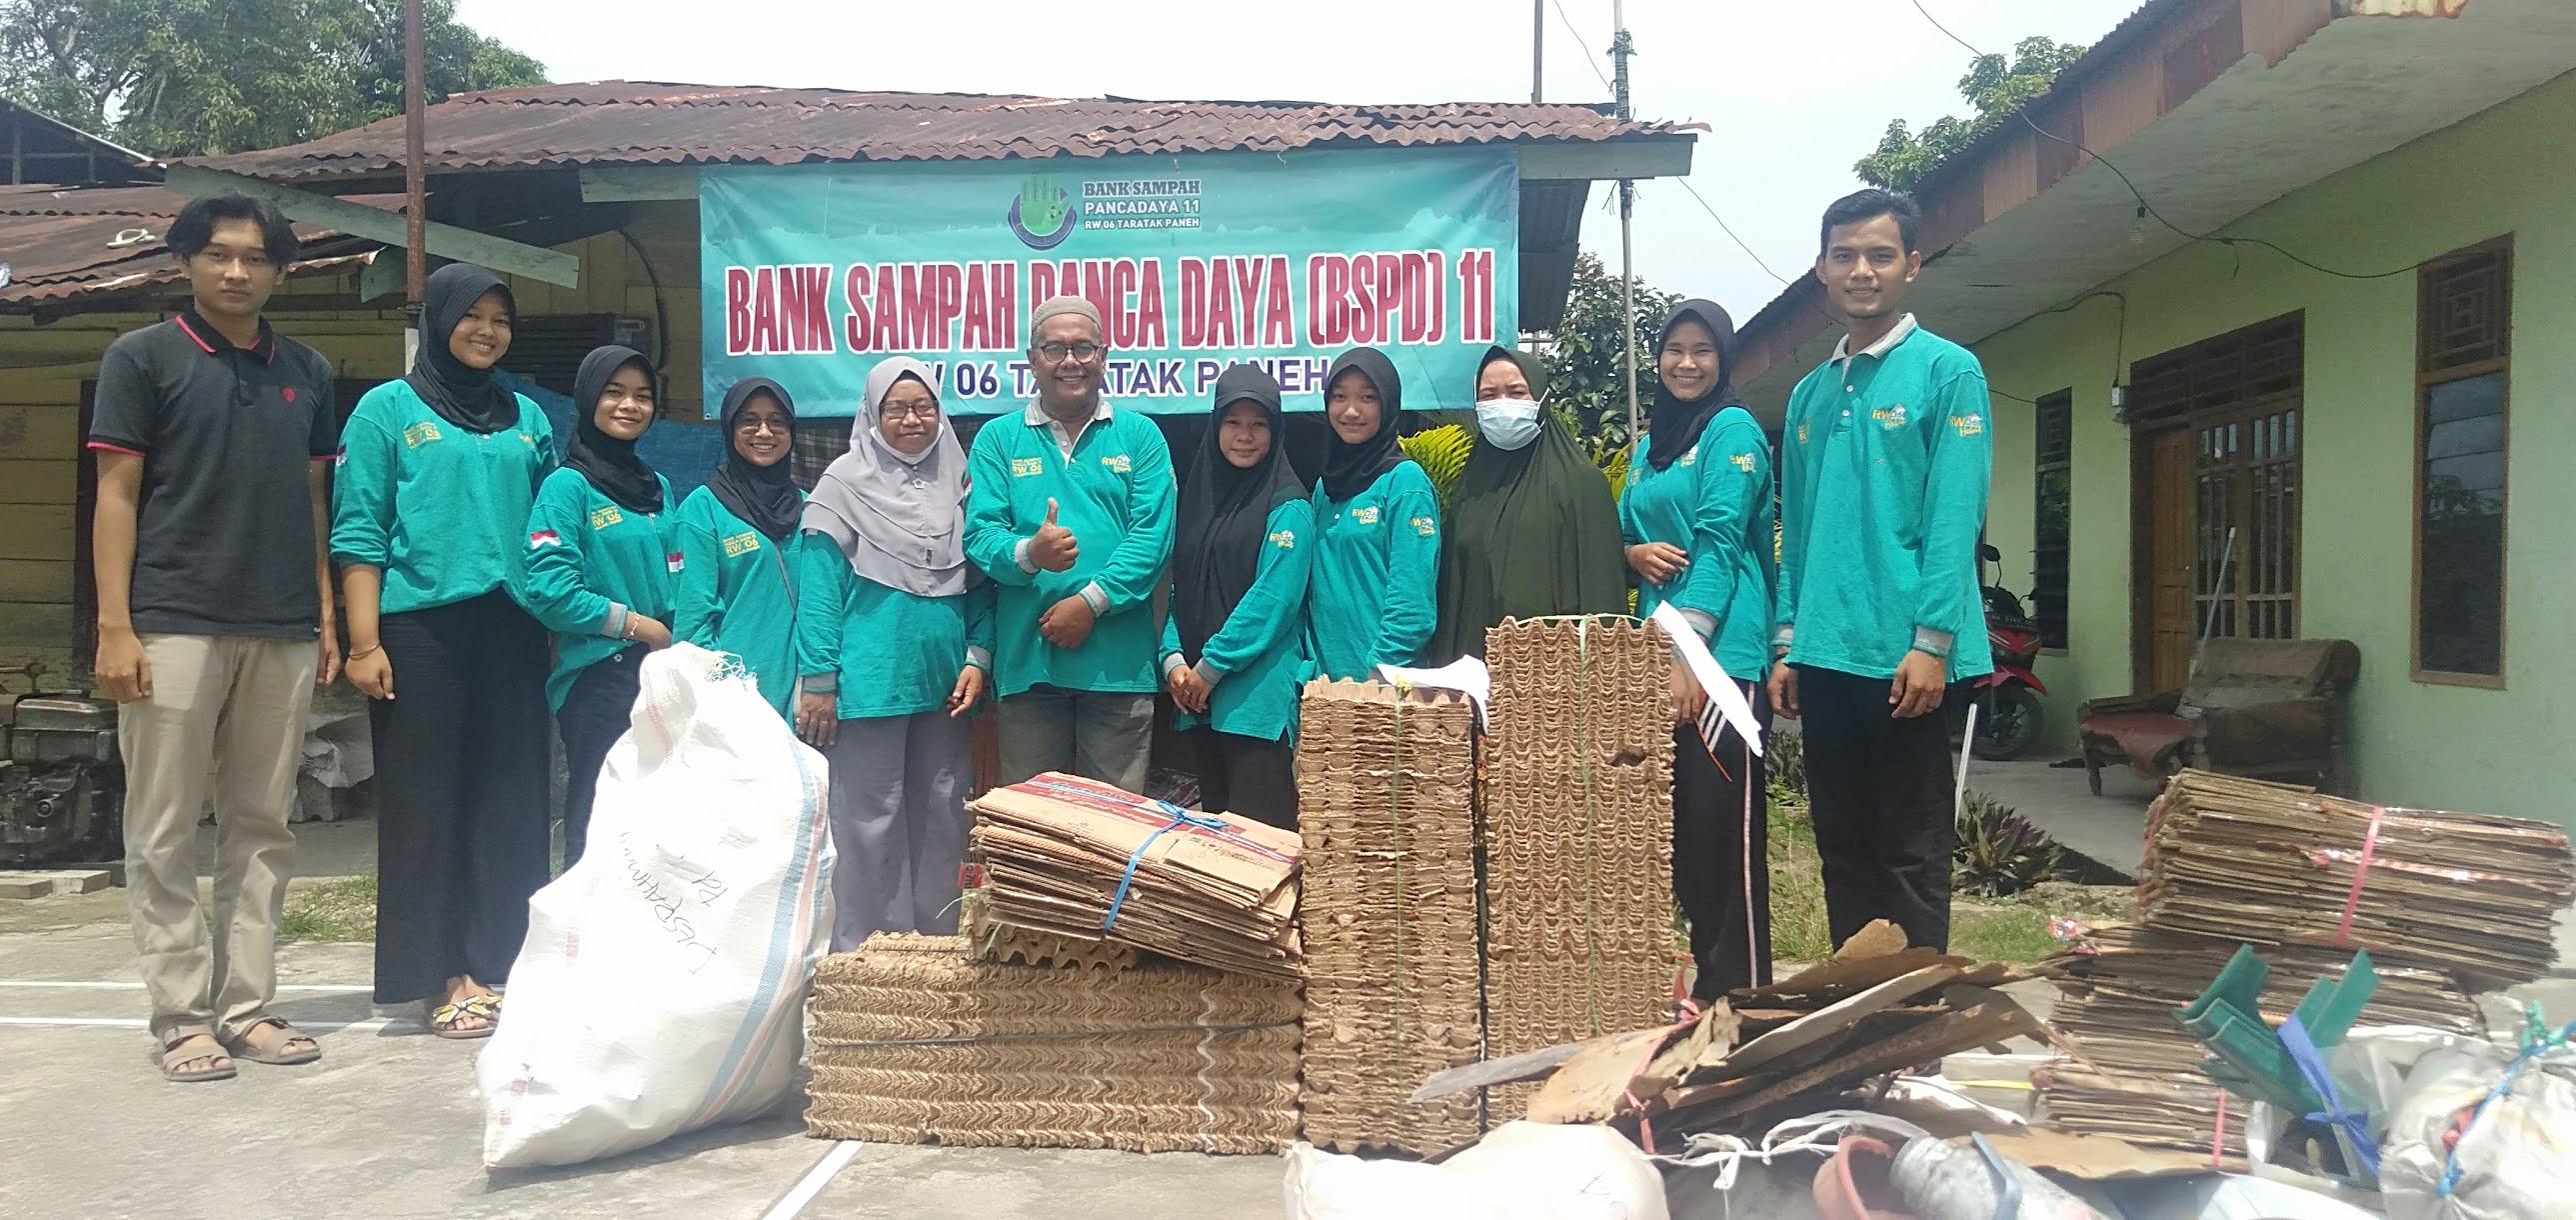 Bank Sampah Pancadaya: Empowering Communities through Sustainable Waste Management